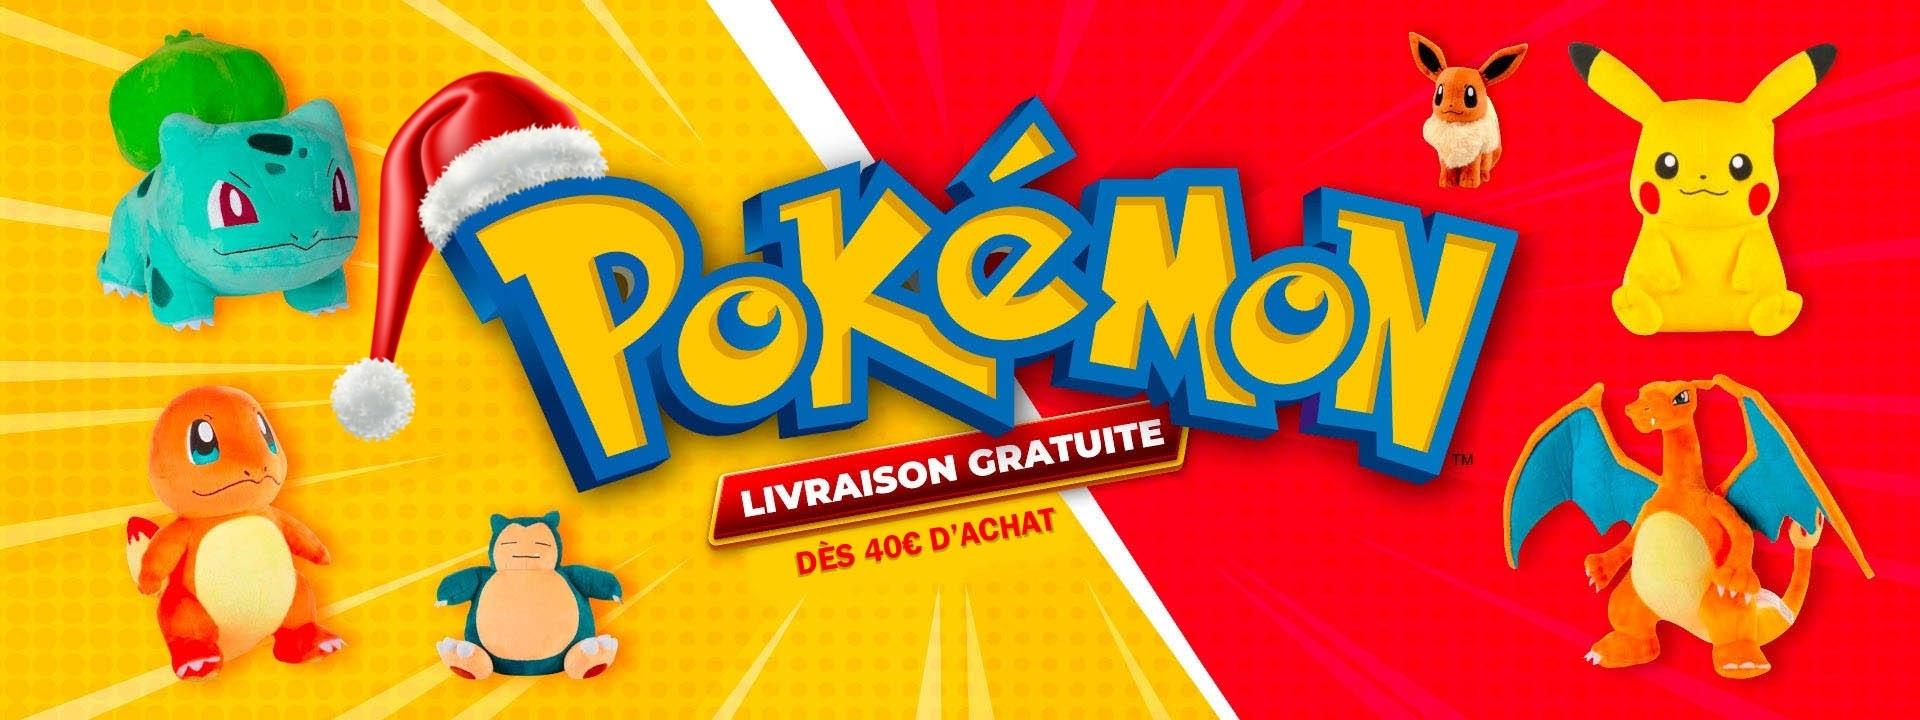 Achetez Votre Déguisement Pokémon sur La Pokémon Boutique